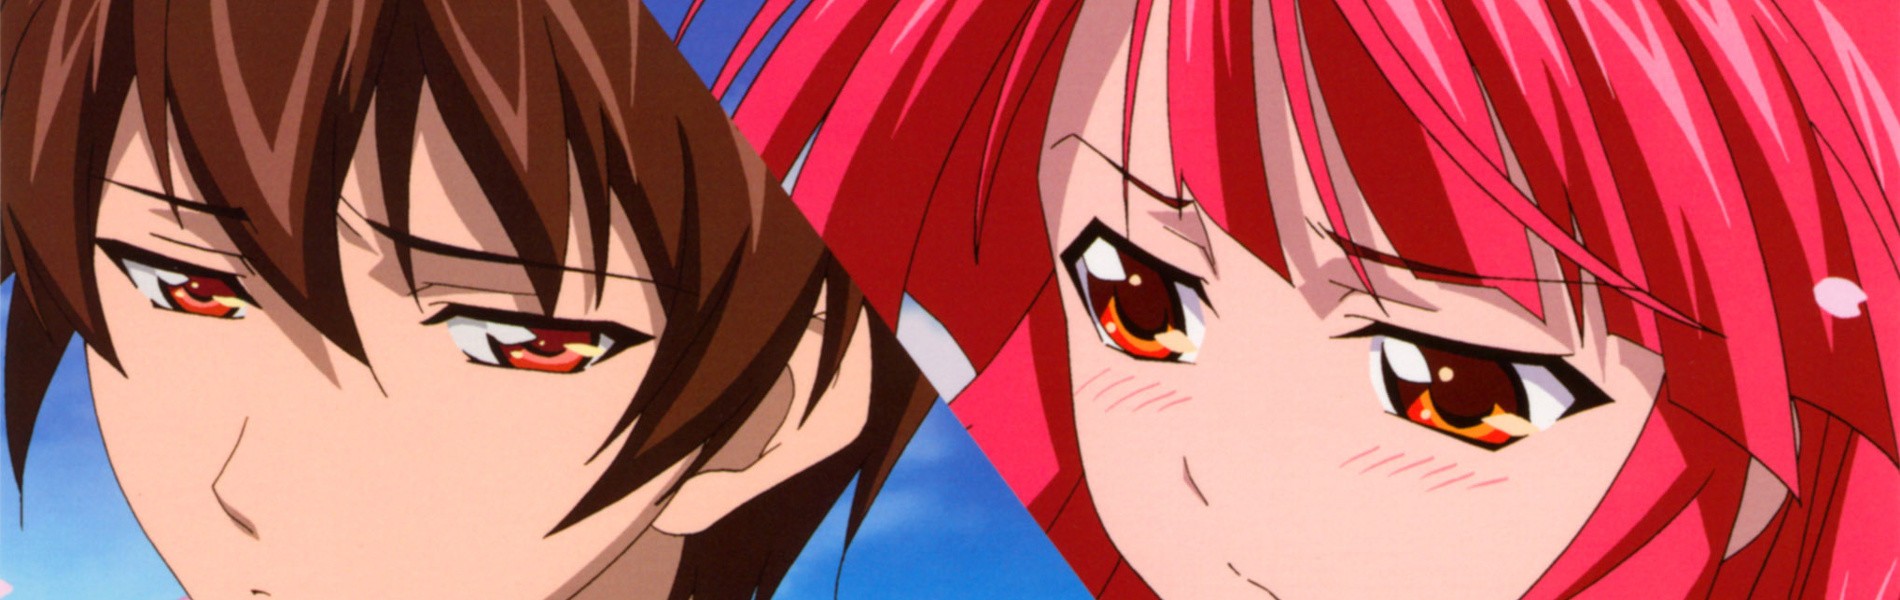 The 20+ Best Anime Similar To Kaze No Stigma